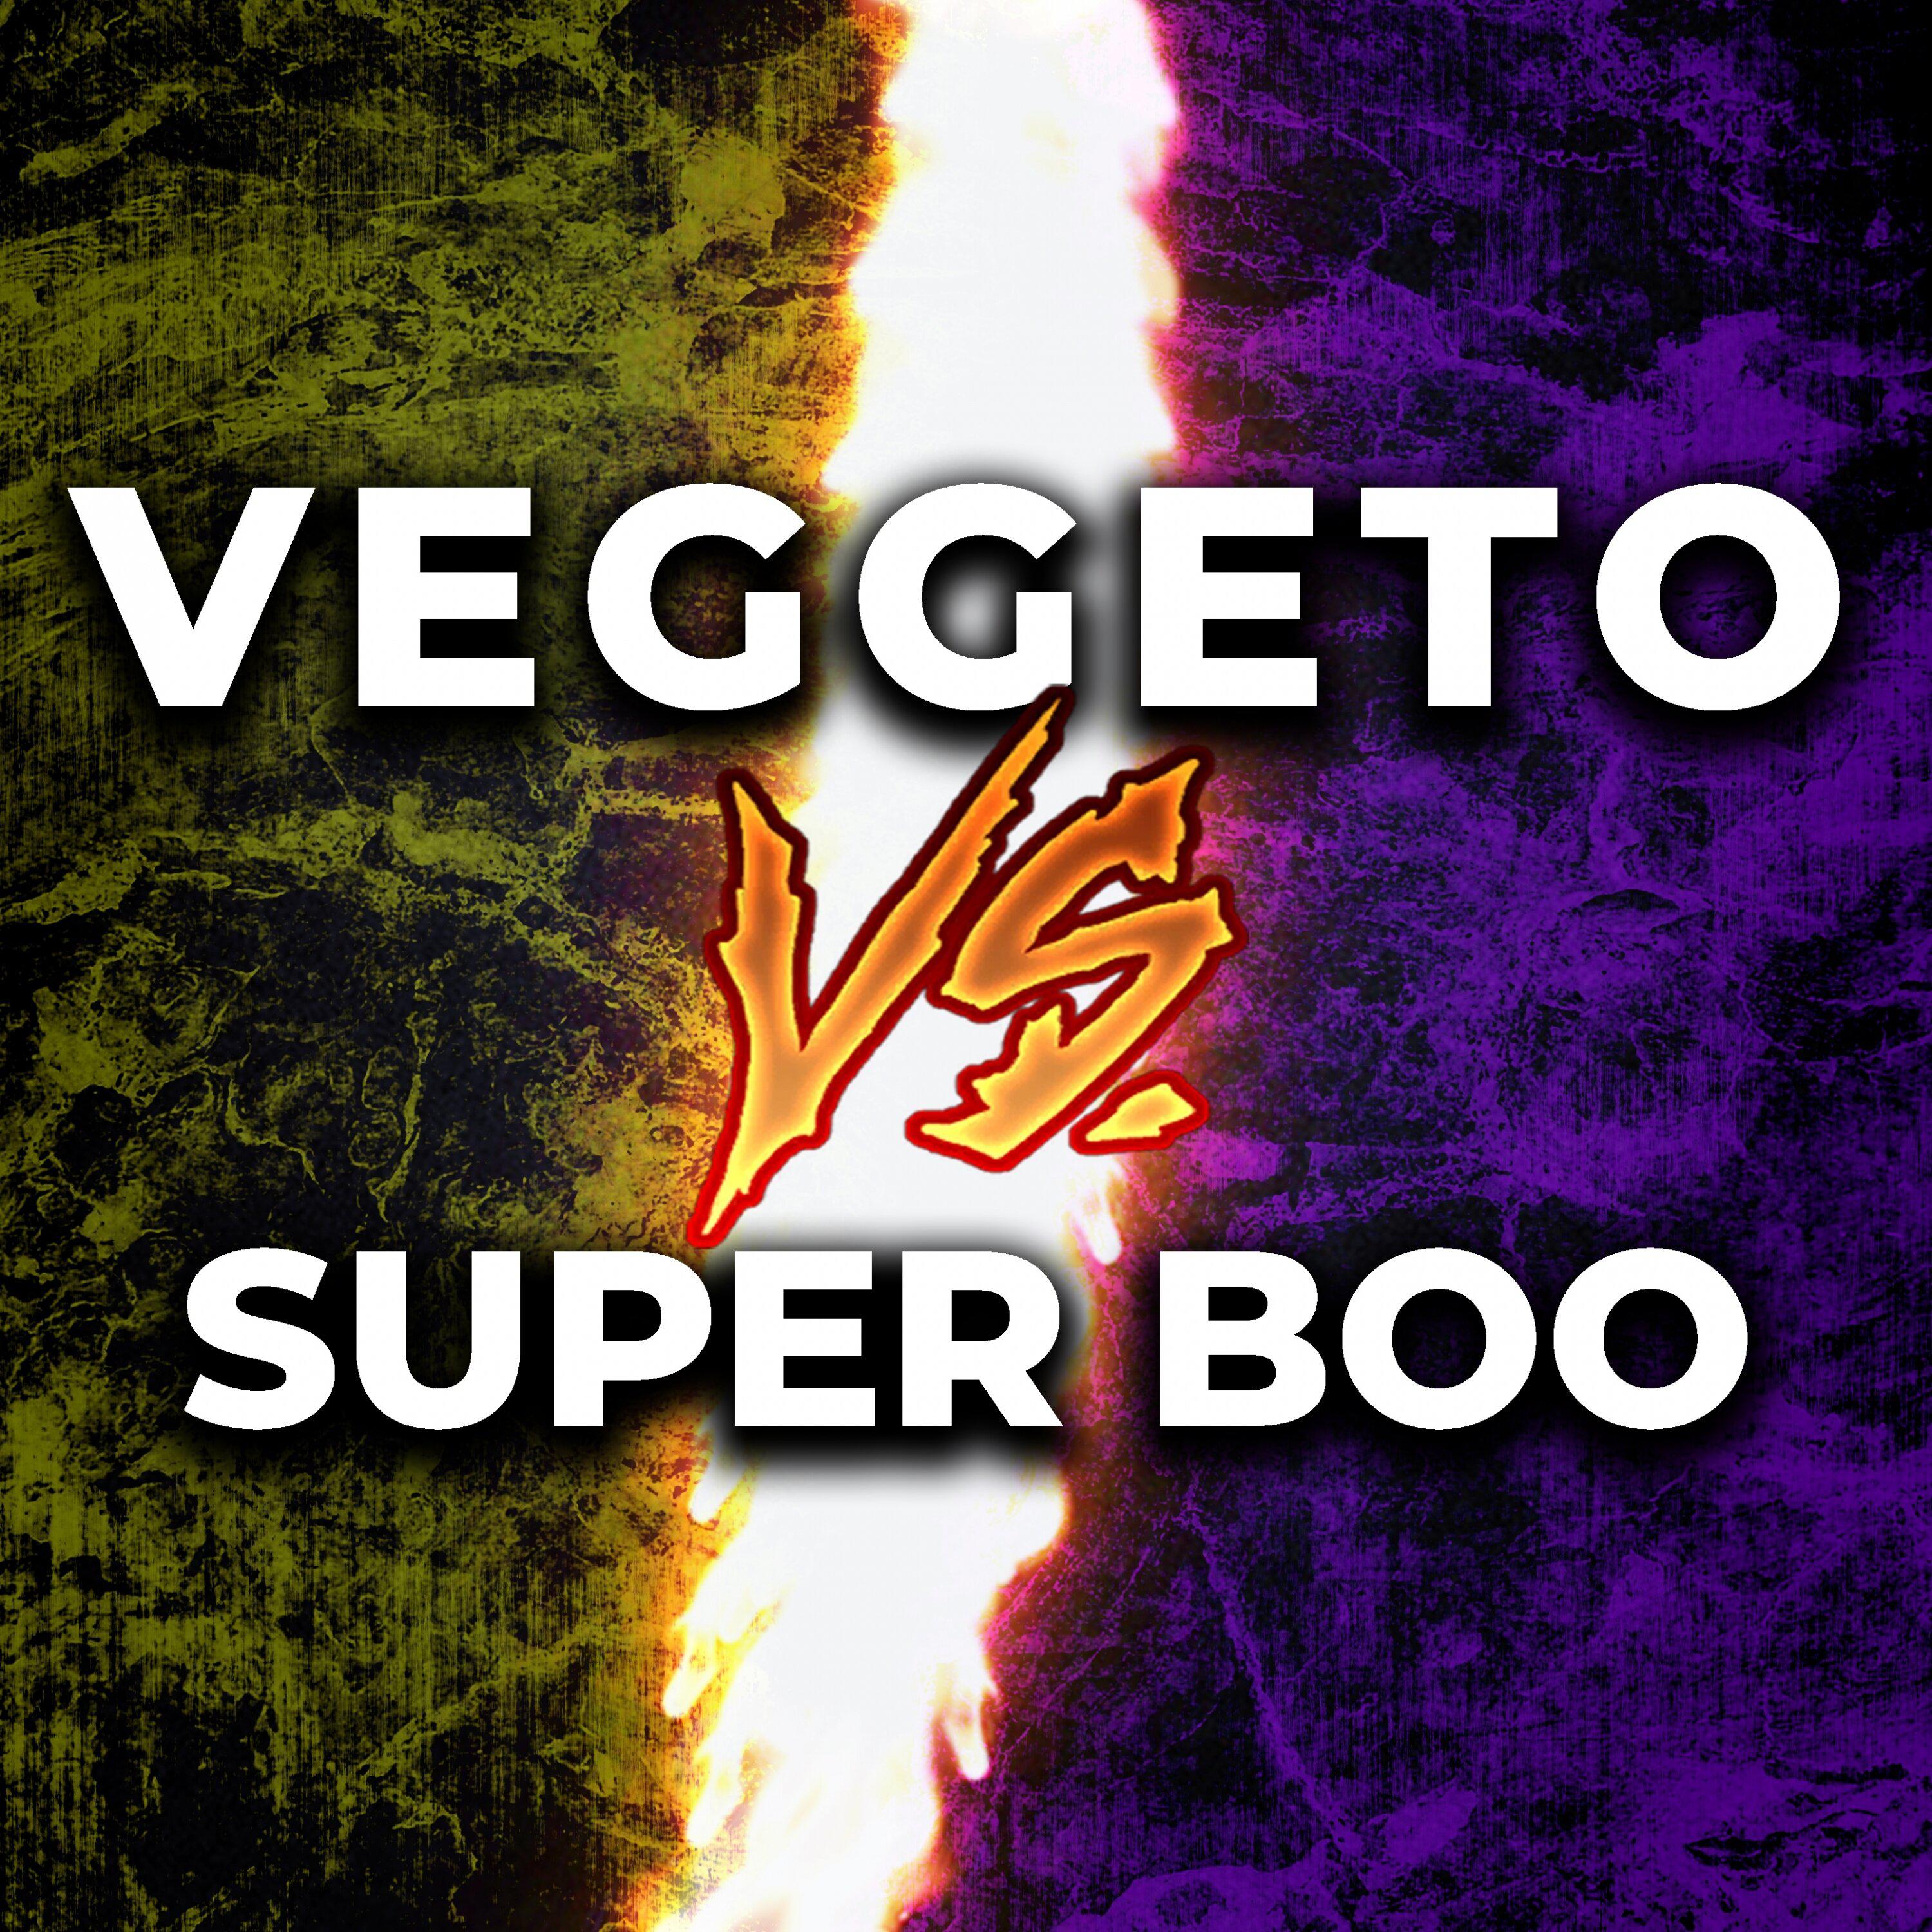 Adlomusic - Veggeto vs. Super boo